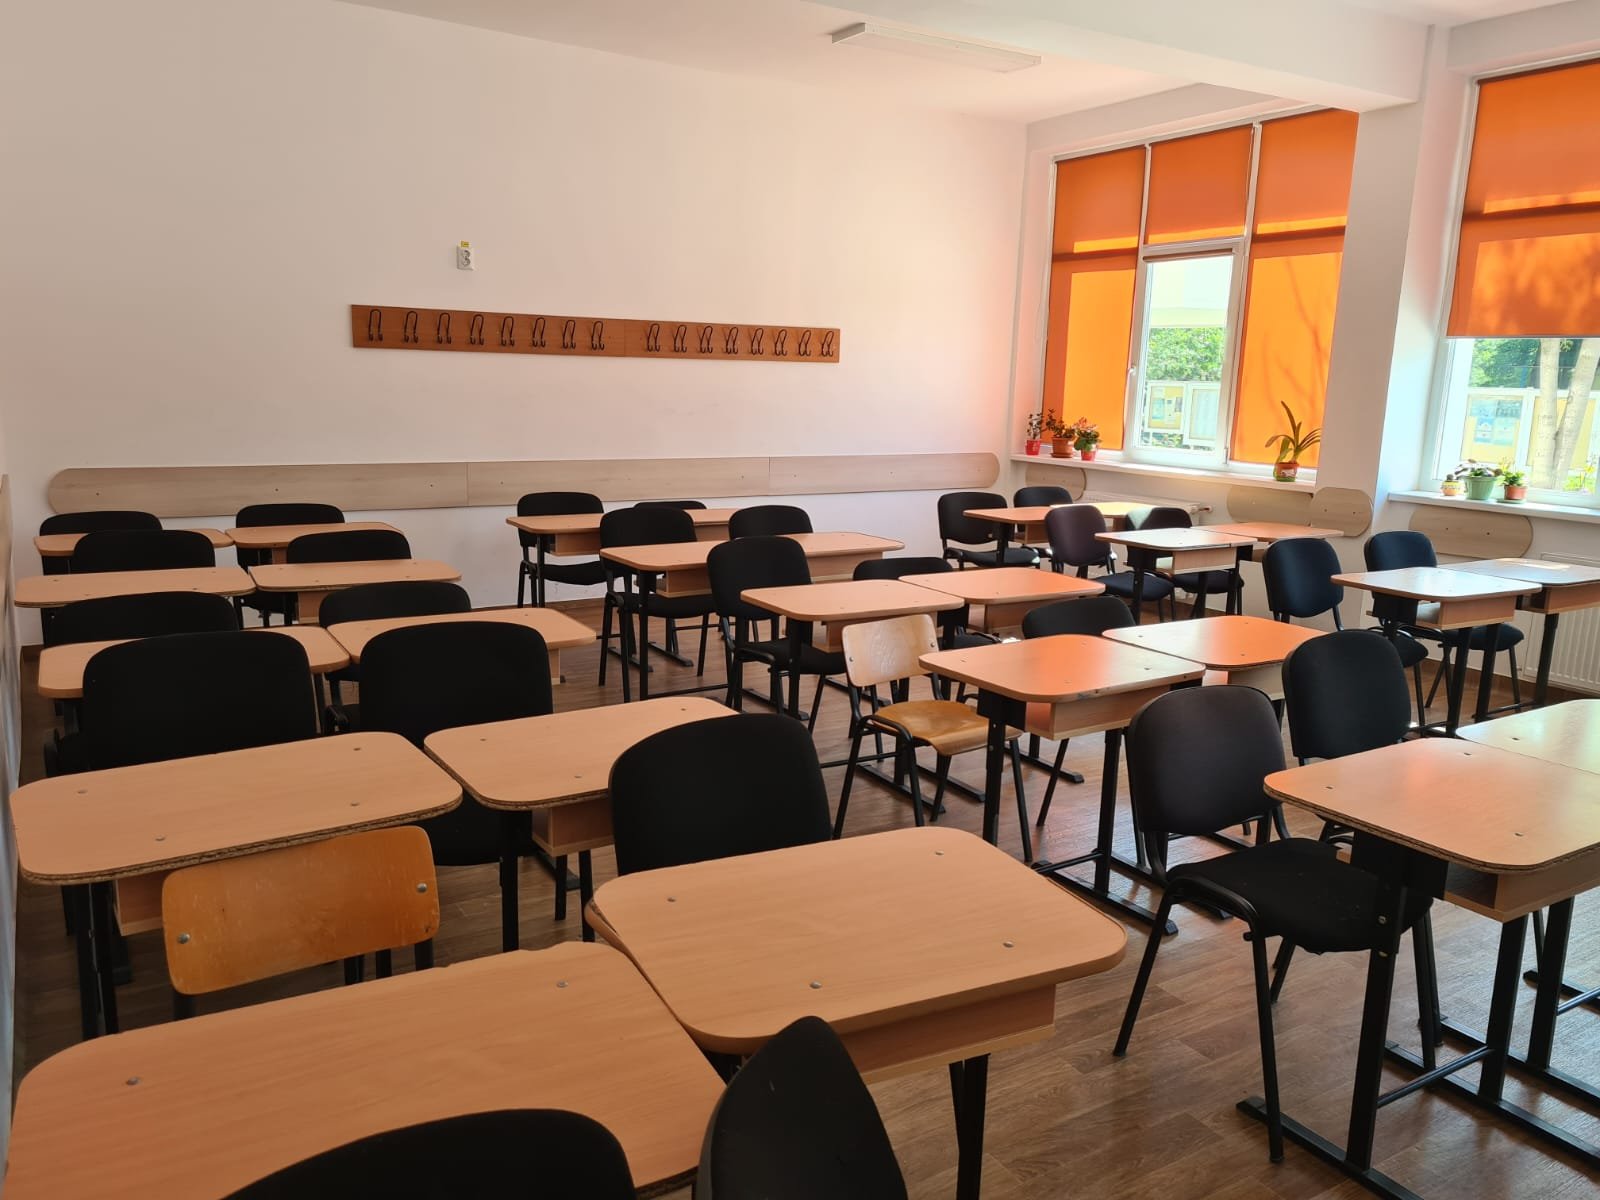  Învățământul din Iași, paralizat din cauza grevei. O singură școală s-a opus protestelor